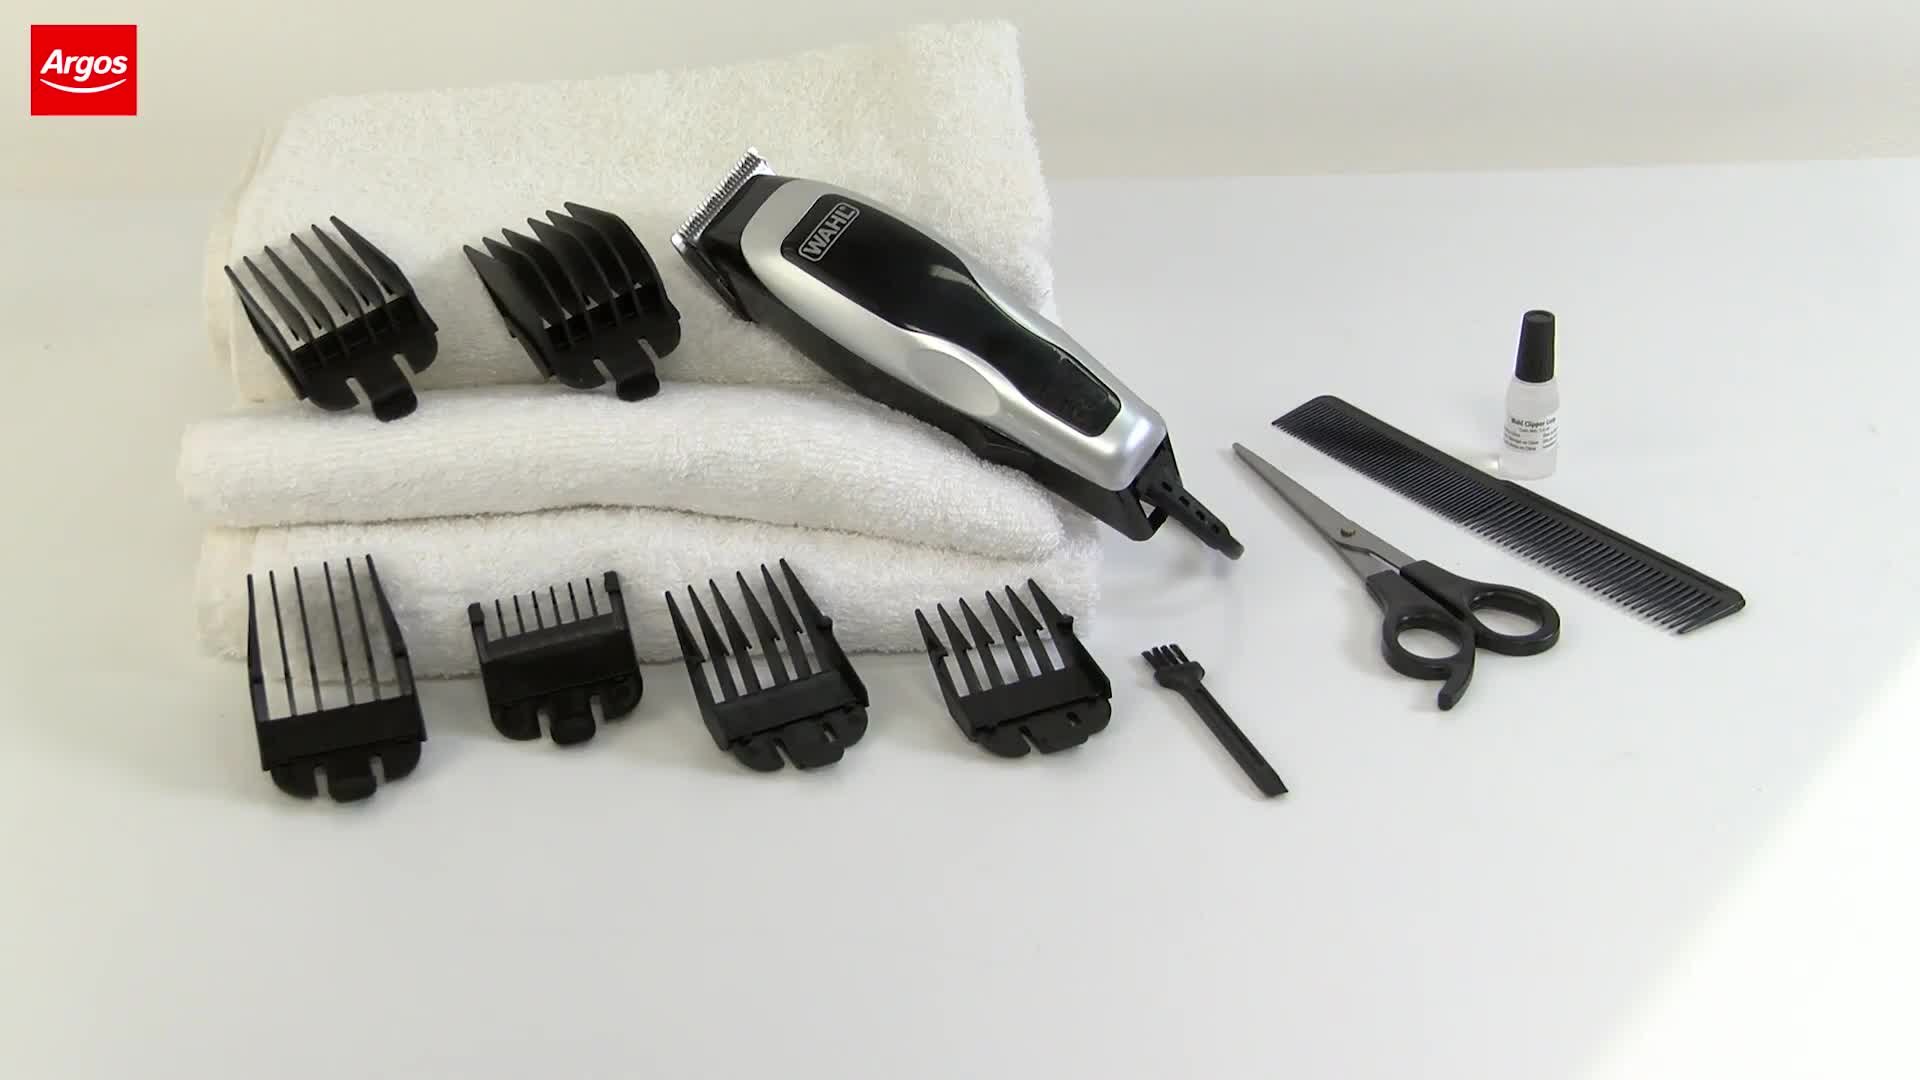 switchblade hair trimmer argos